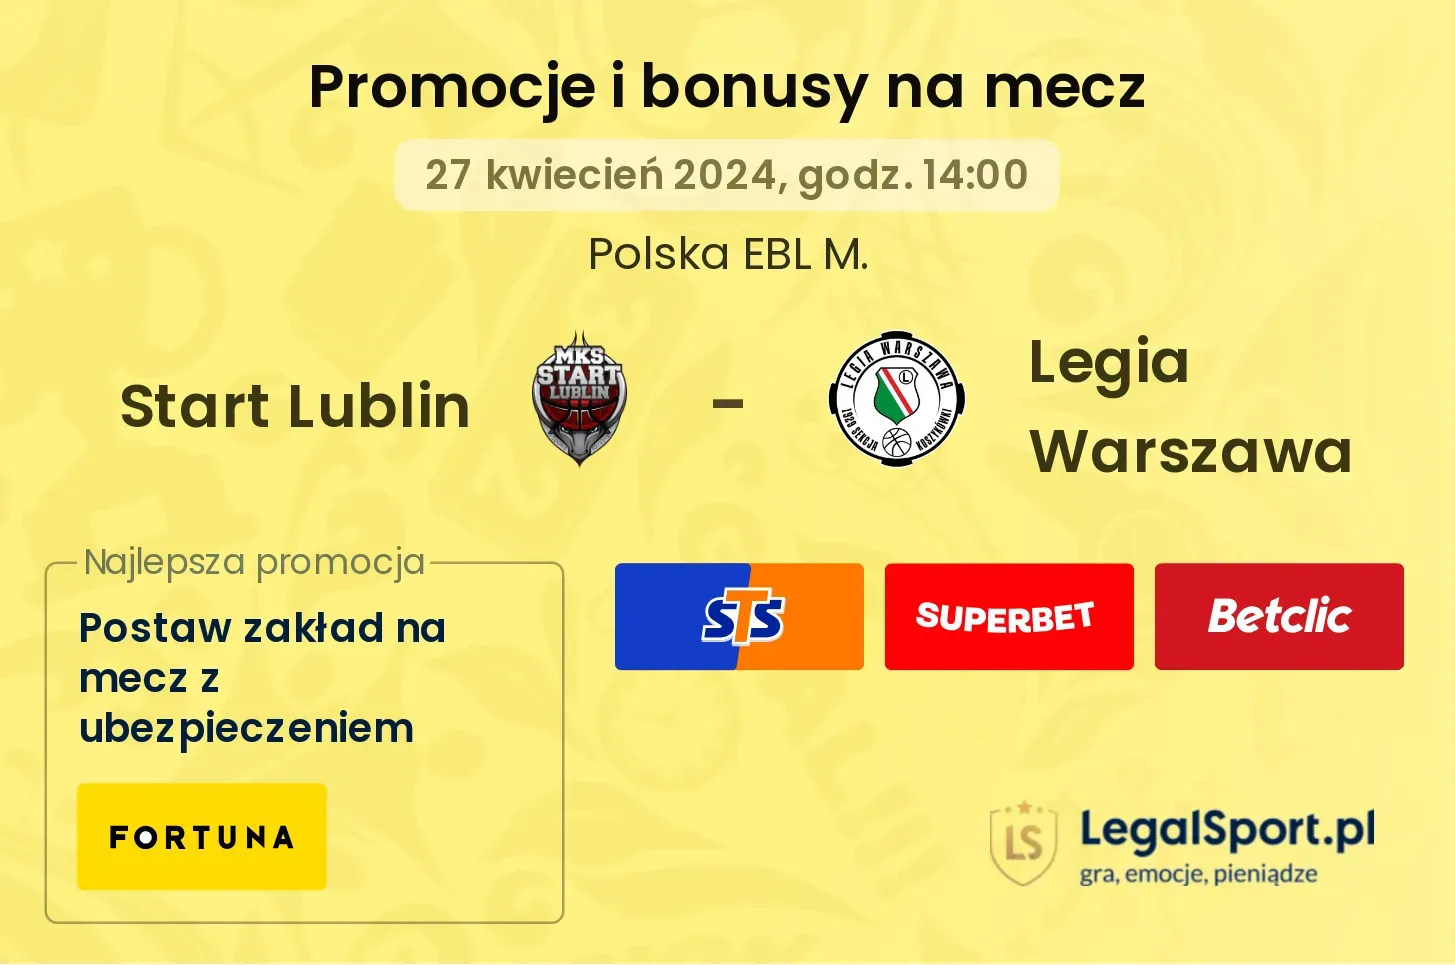 Start Lublin - Legia Warszawa promocje i bonusy (27.04, 14:00)